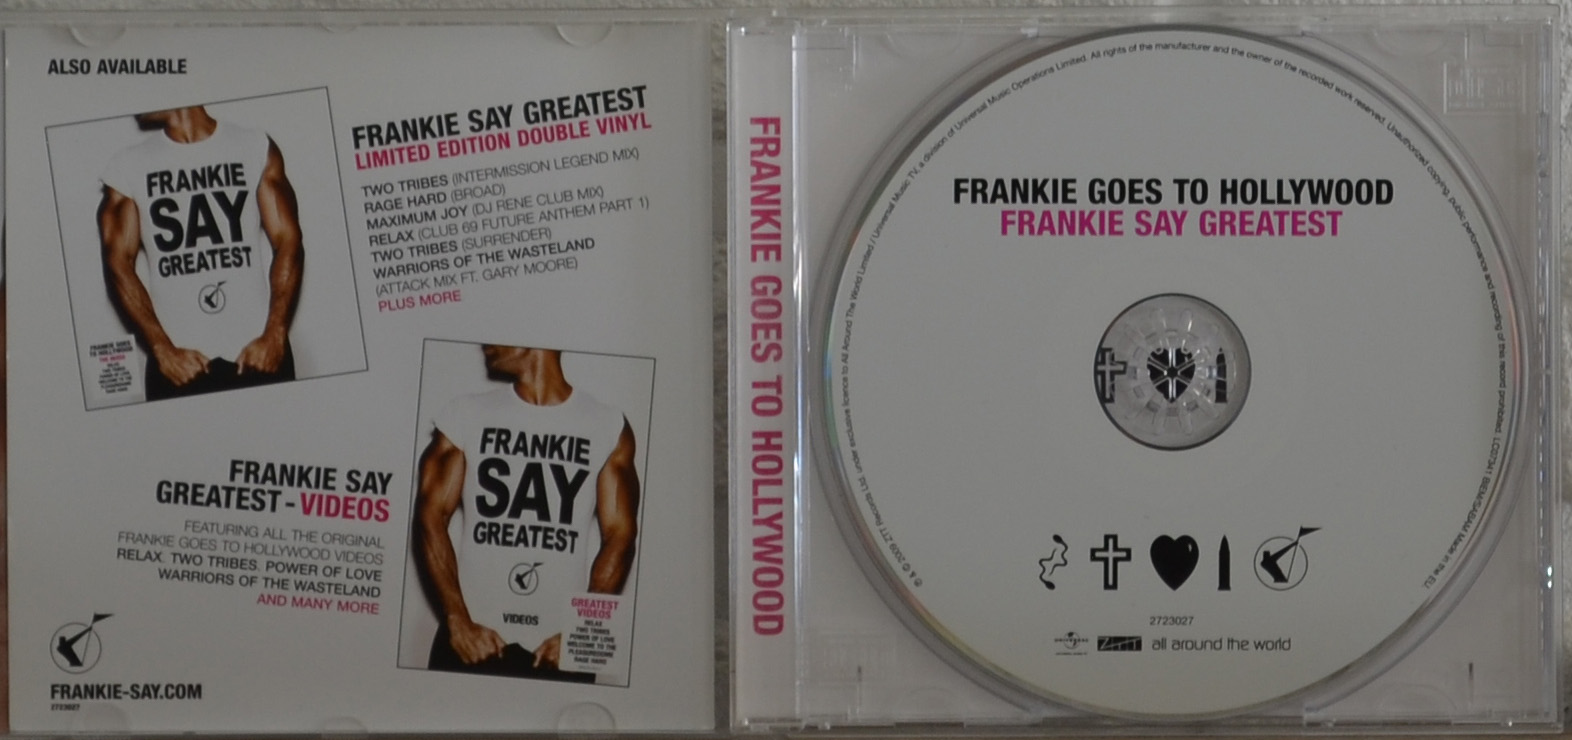 Frankie say greatest 